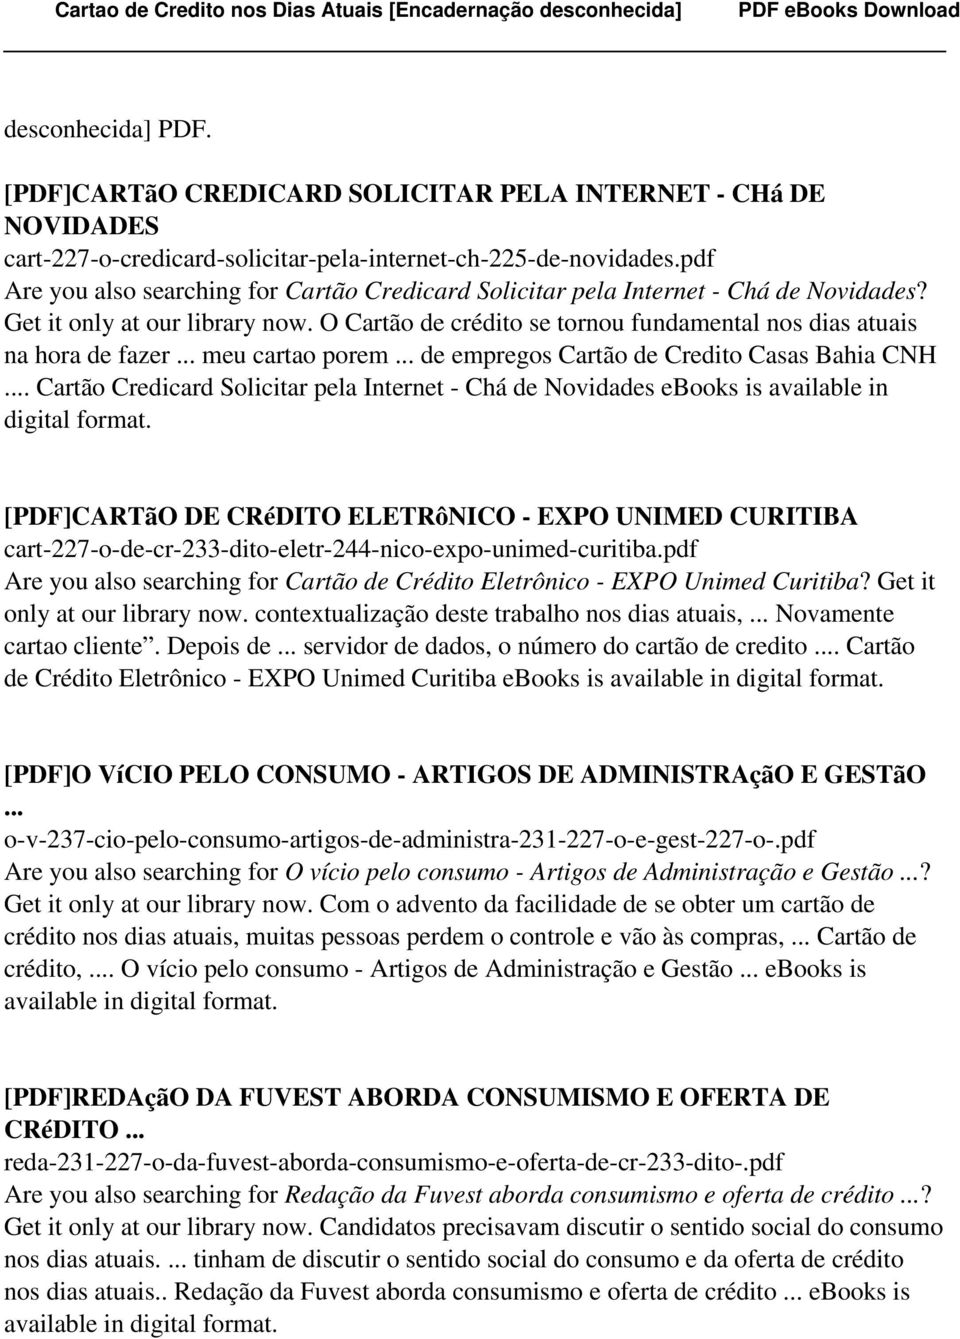 .. meu cartao porem... de empregos Cartão de Credito Casas Bahia CNH... Cartão Credicard Solicitar pela Internet - Chá de Novidades ebooks is available in digital format.